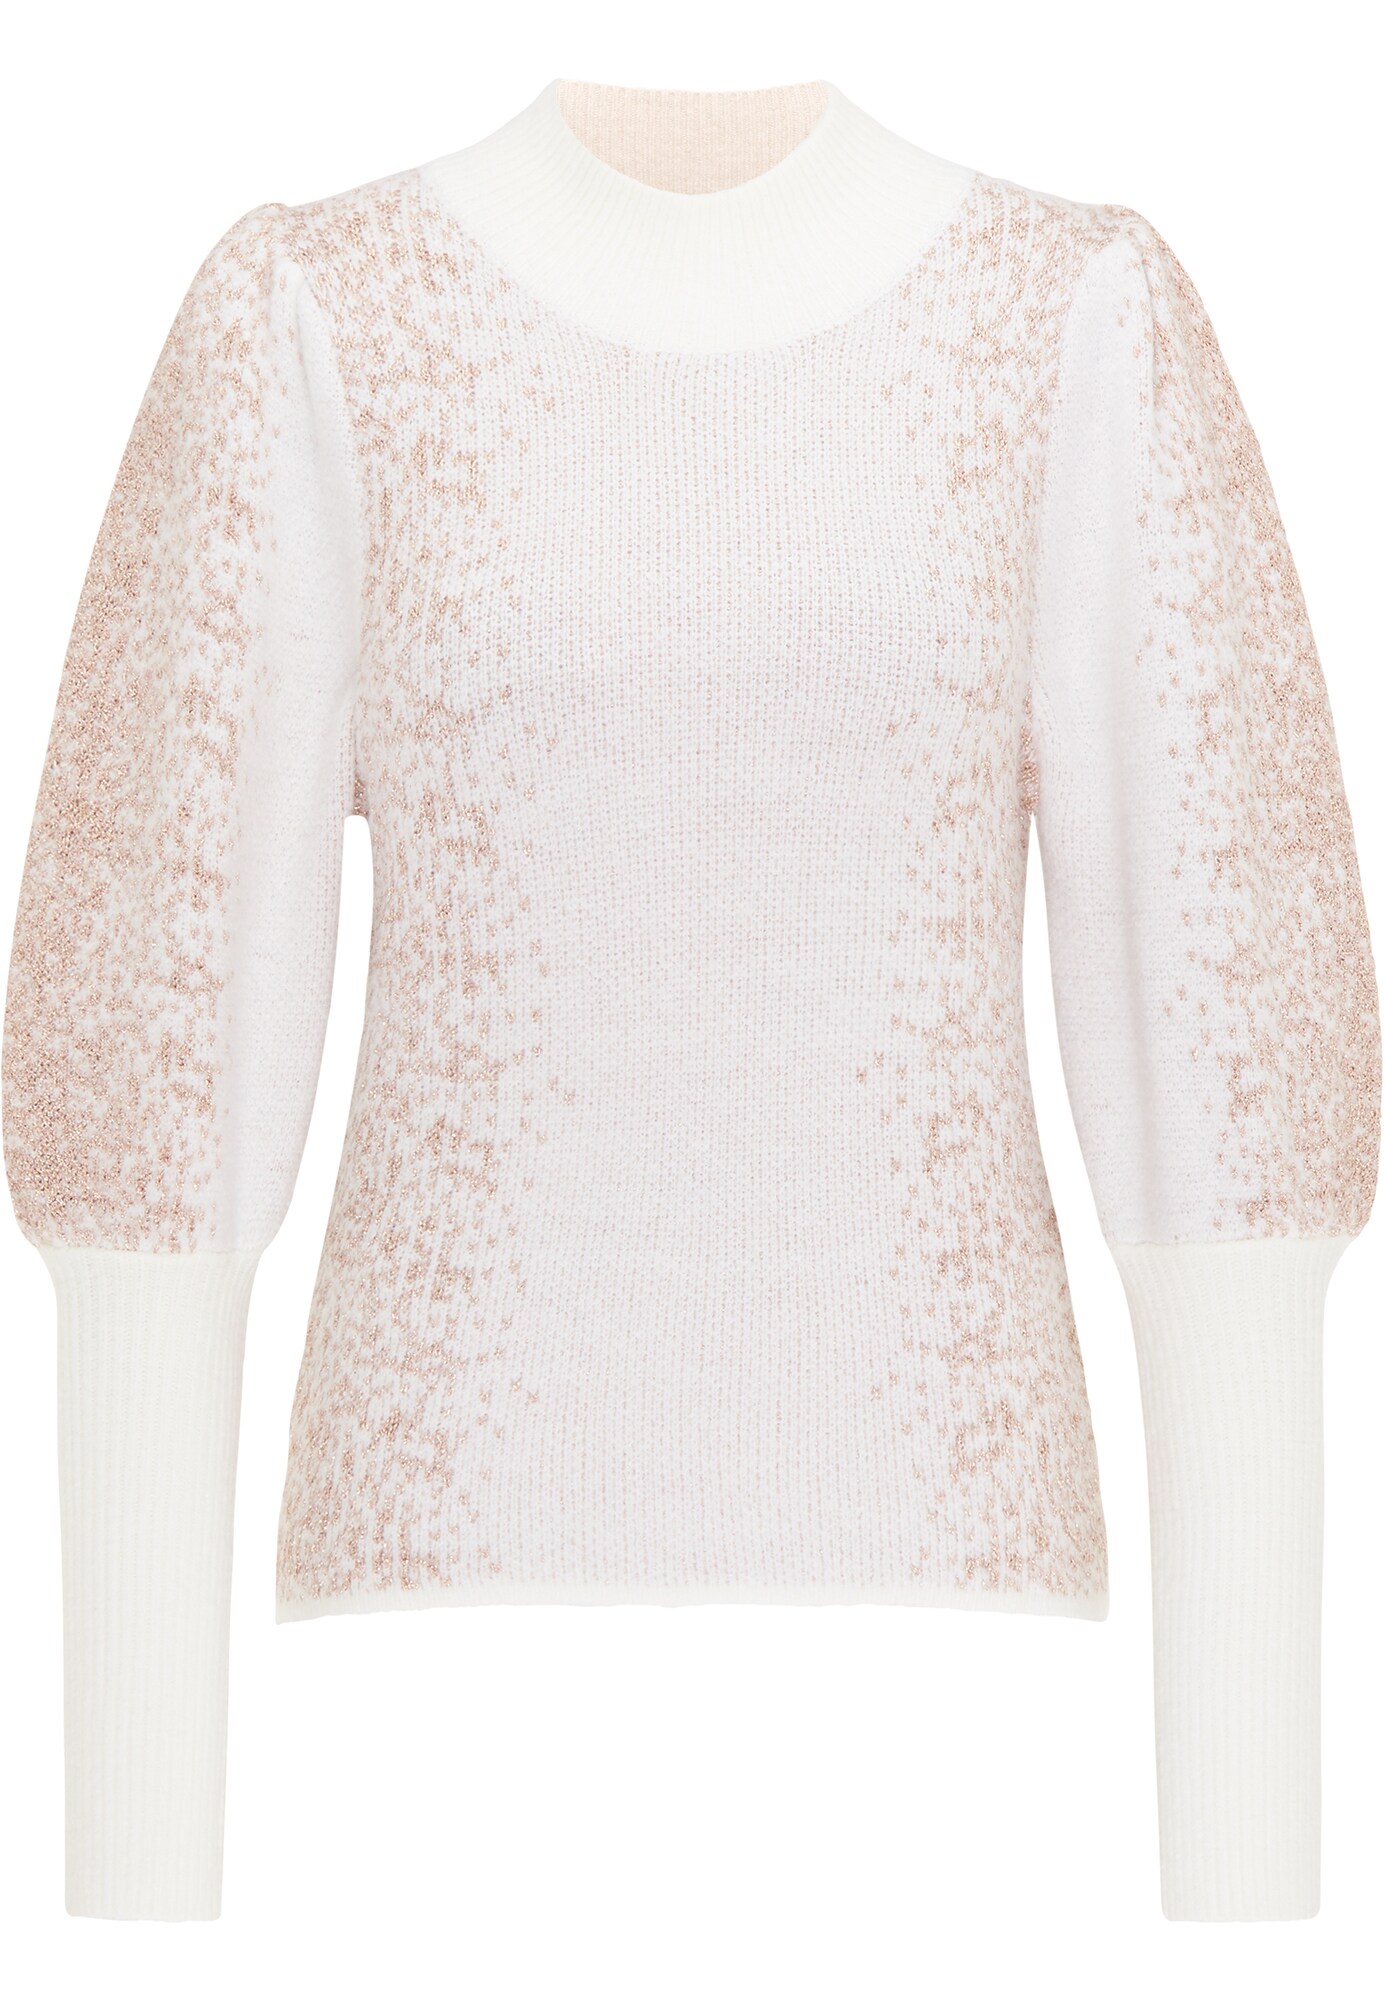 faina Megztinis  balta / ryškiai rožinė spalva